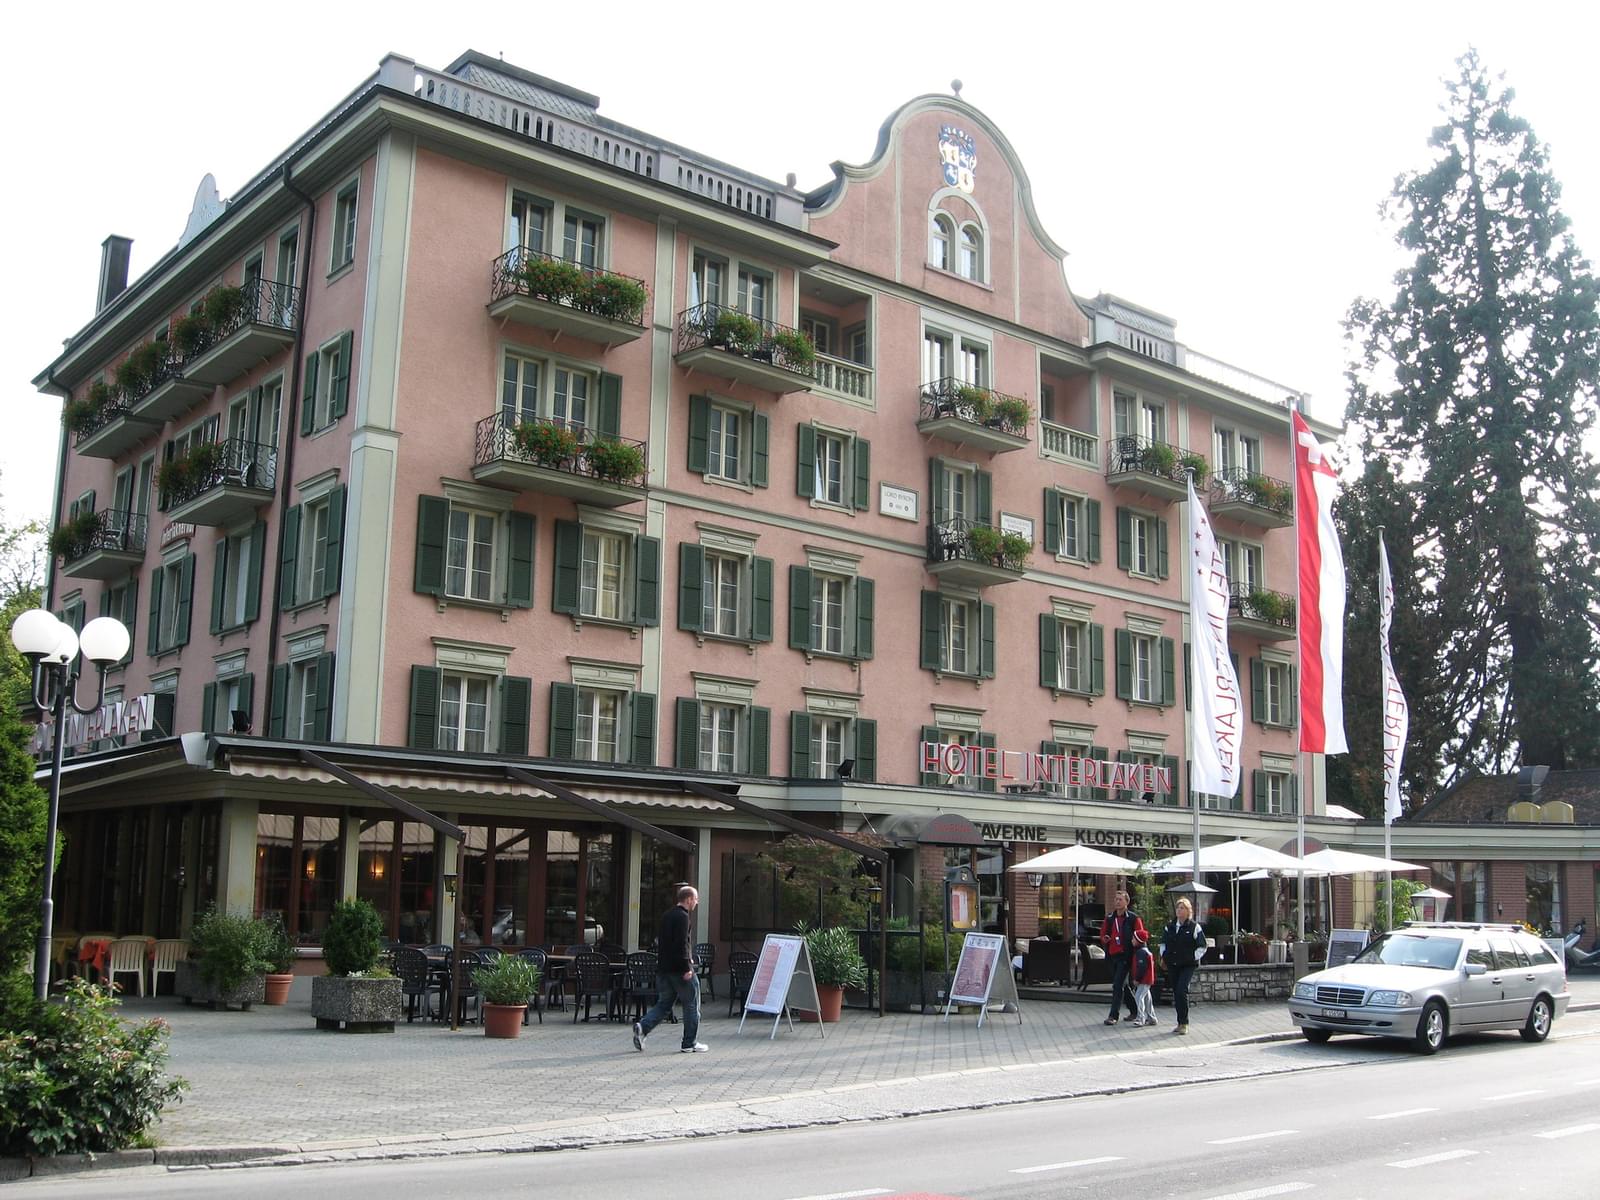 Hotel Interlaken